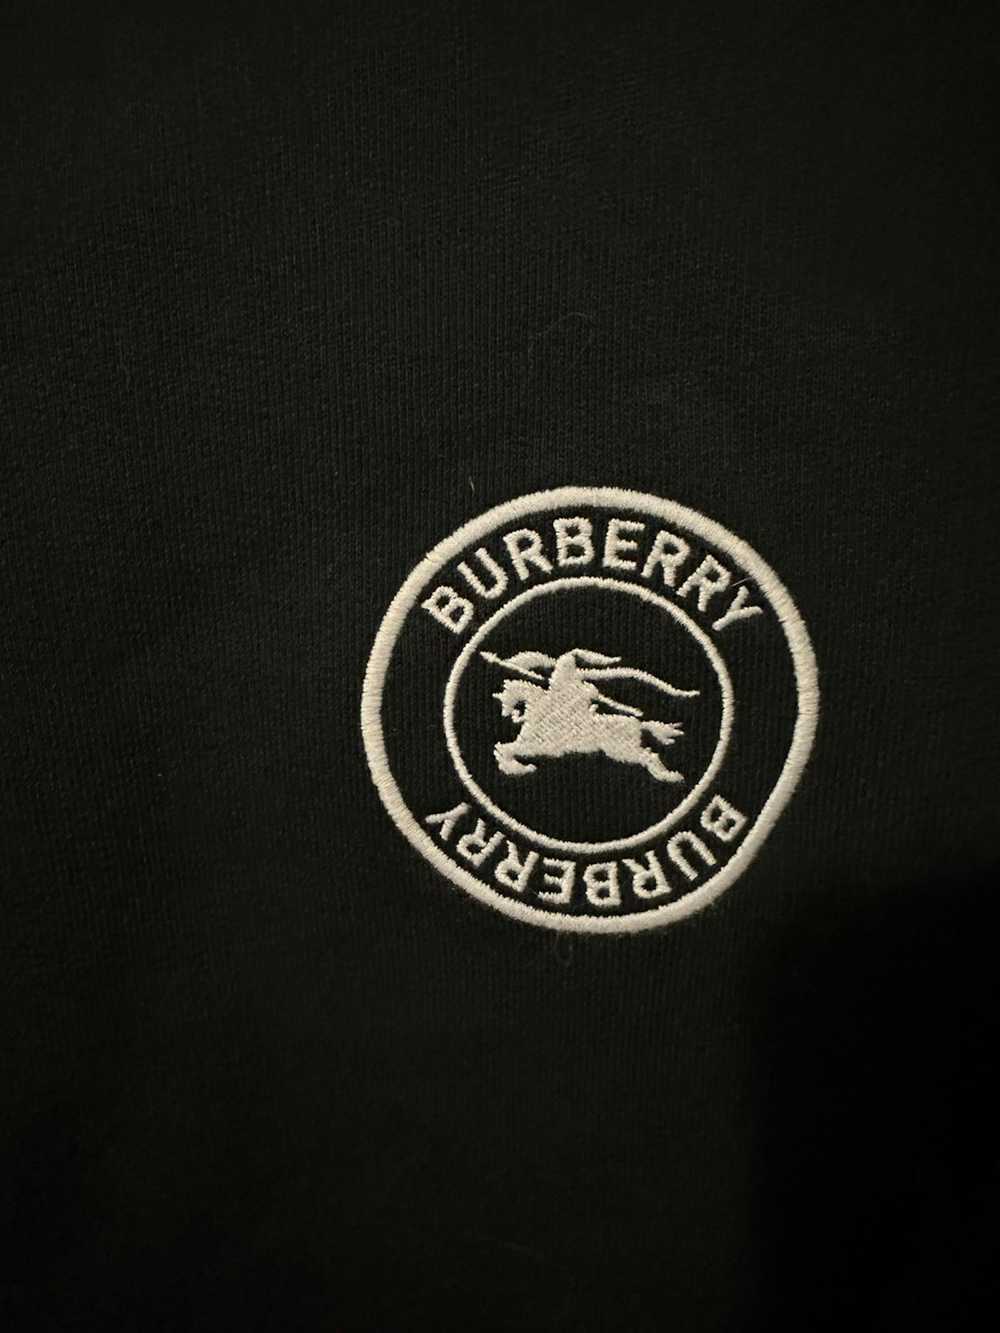 Burberry Burberry zip up hoodie - image 2